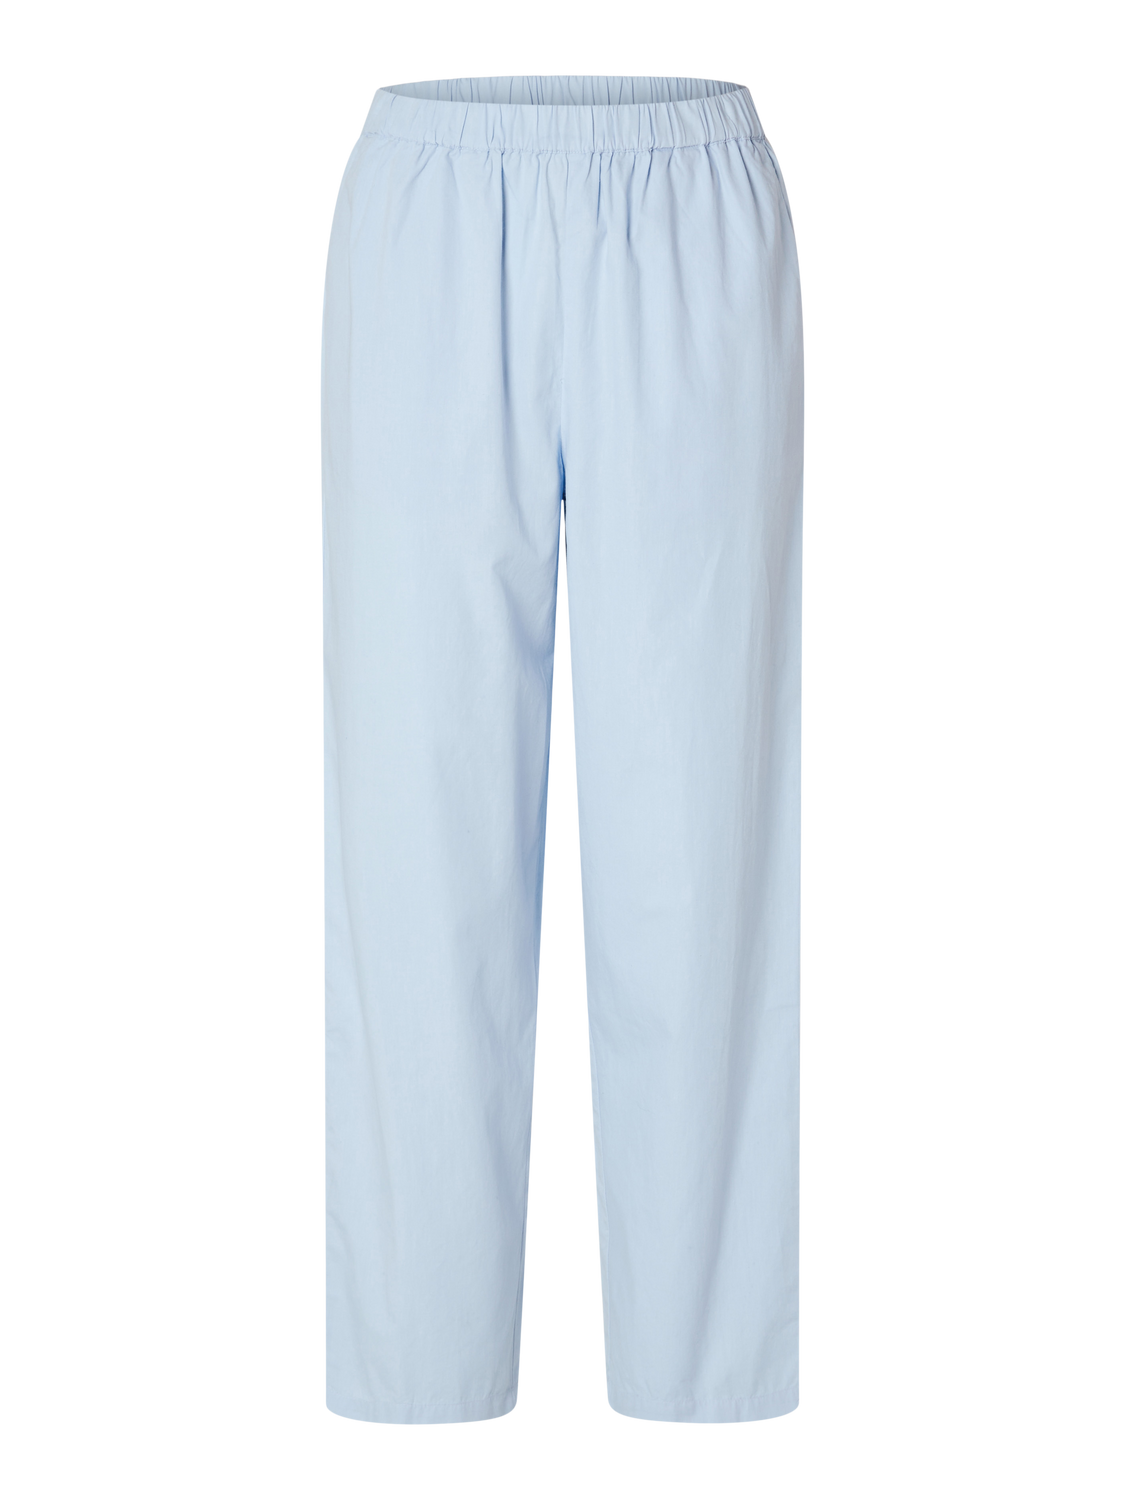 SLFBLAIR Pants - Cashmere Blue